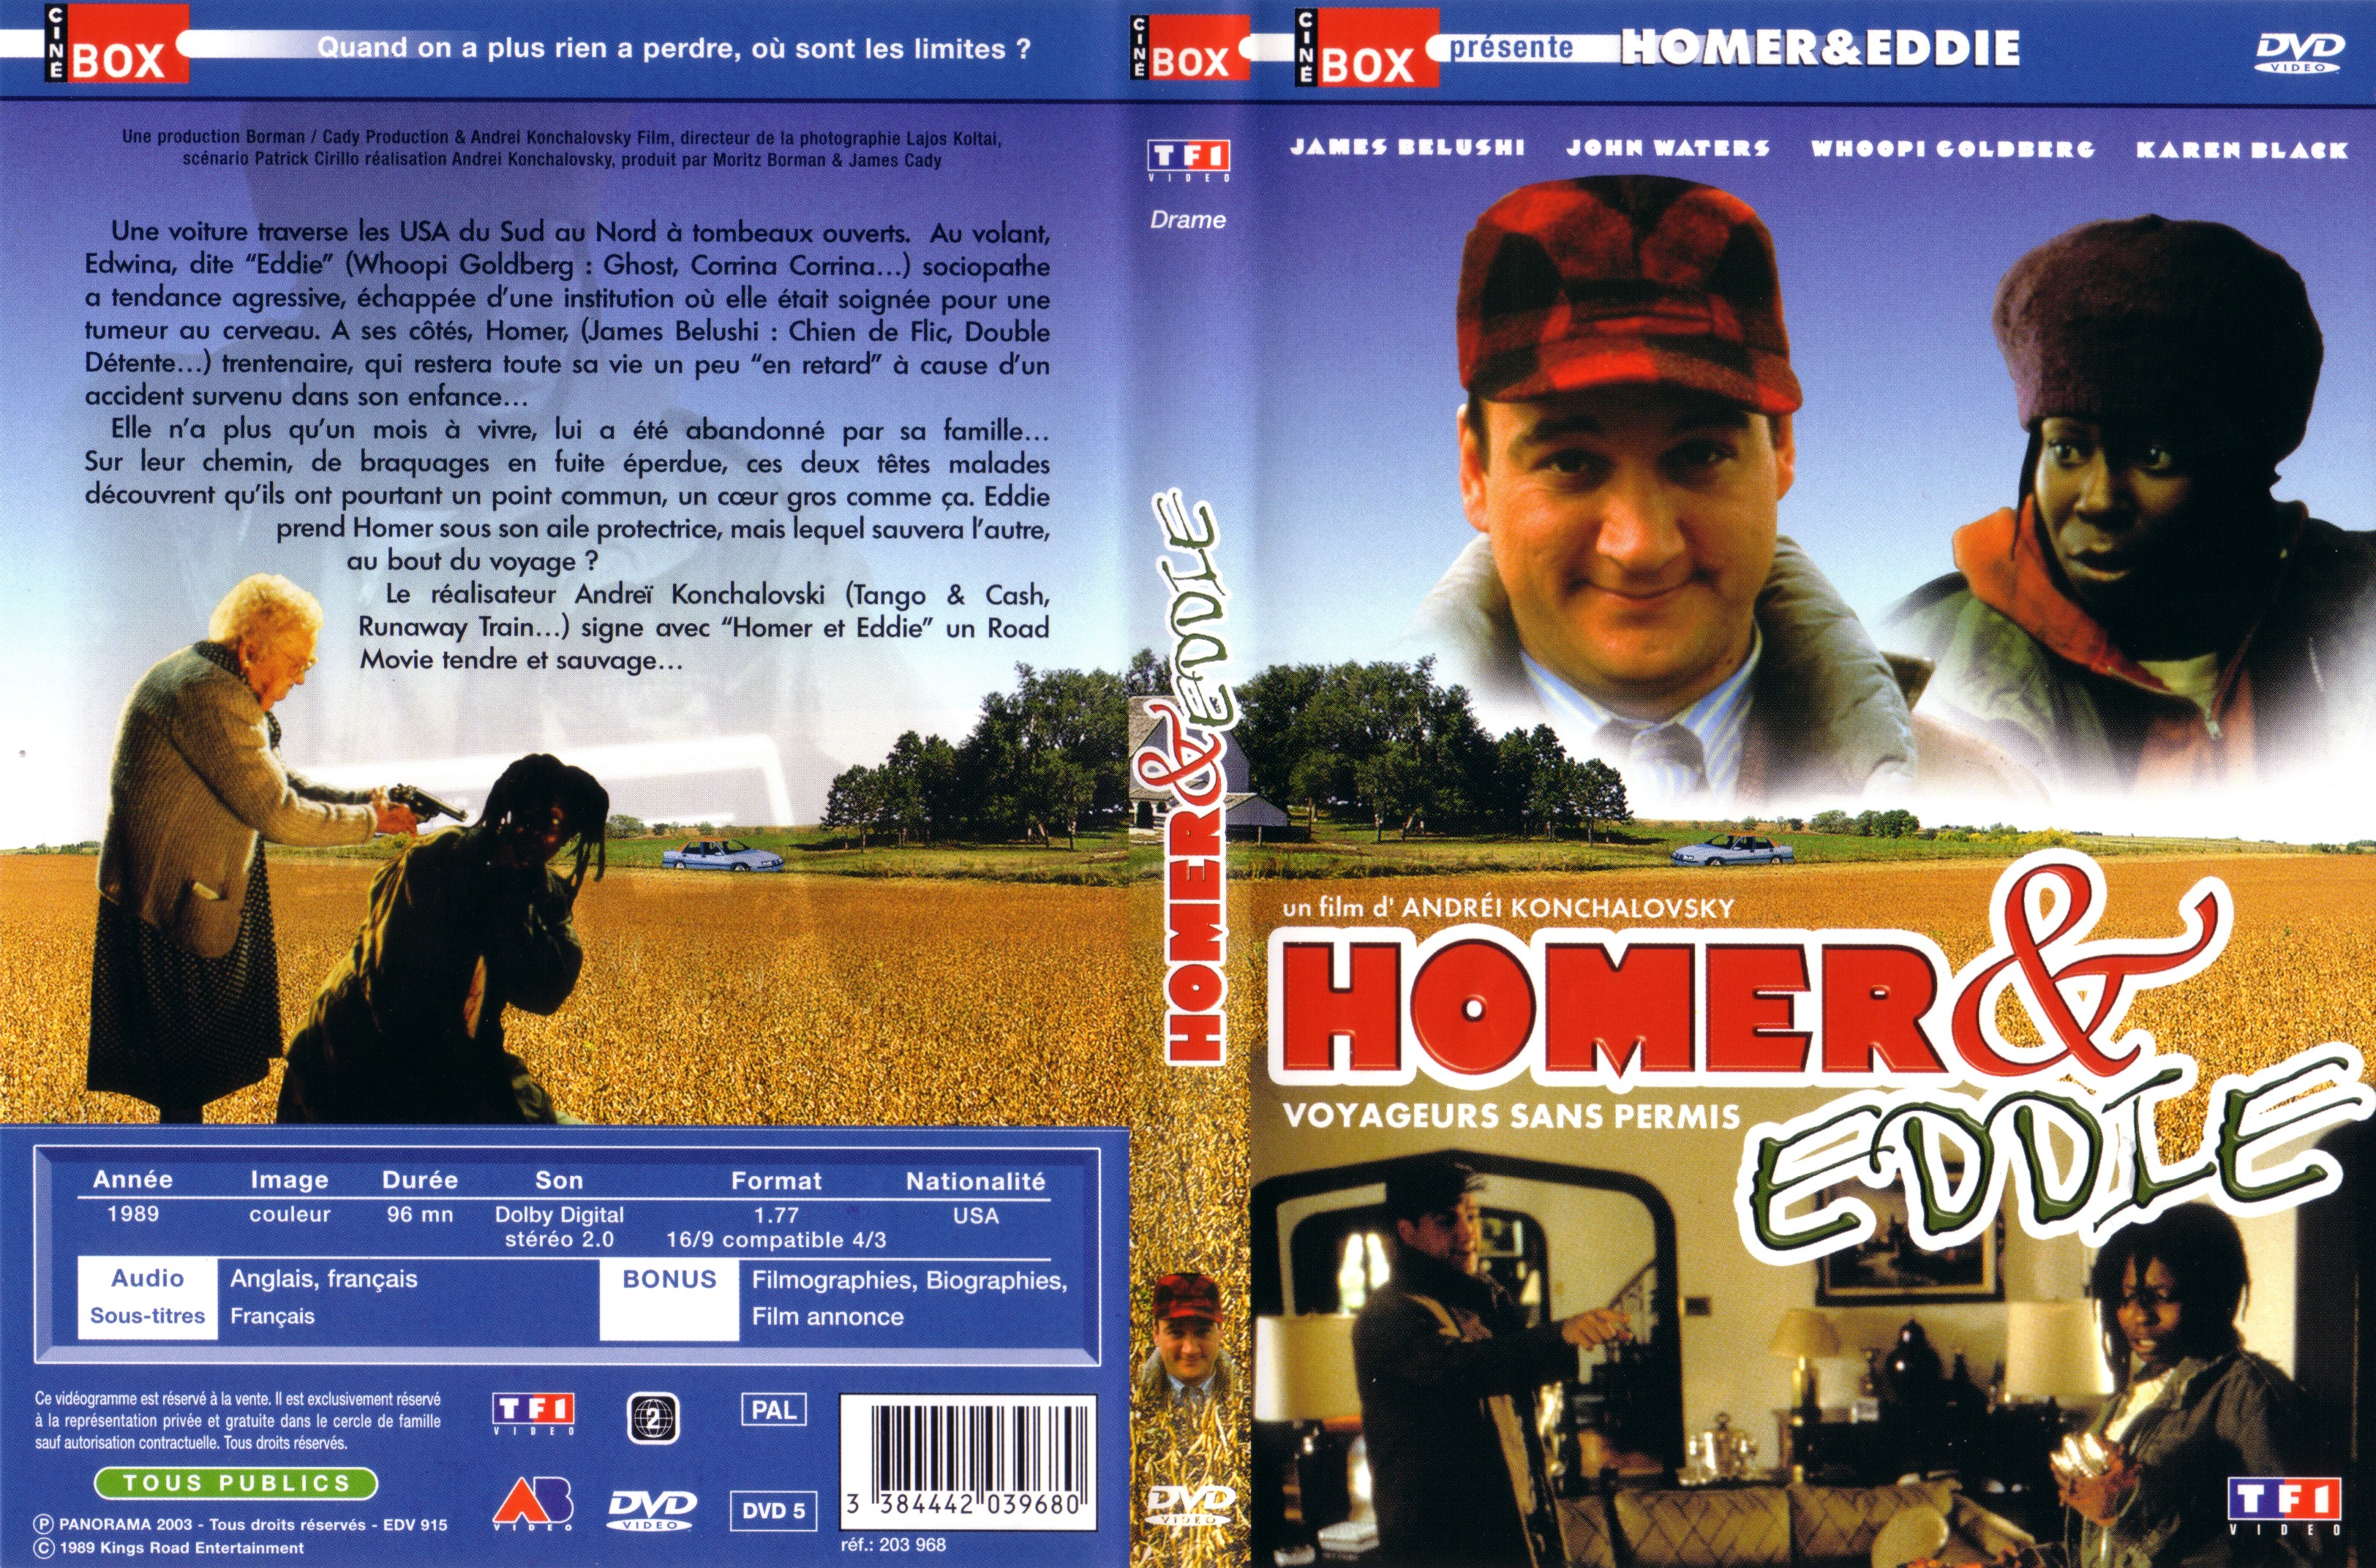 Jaquette DVD Homer et Eddie voyageurs sans permis v2